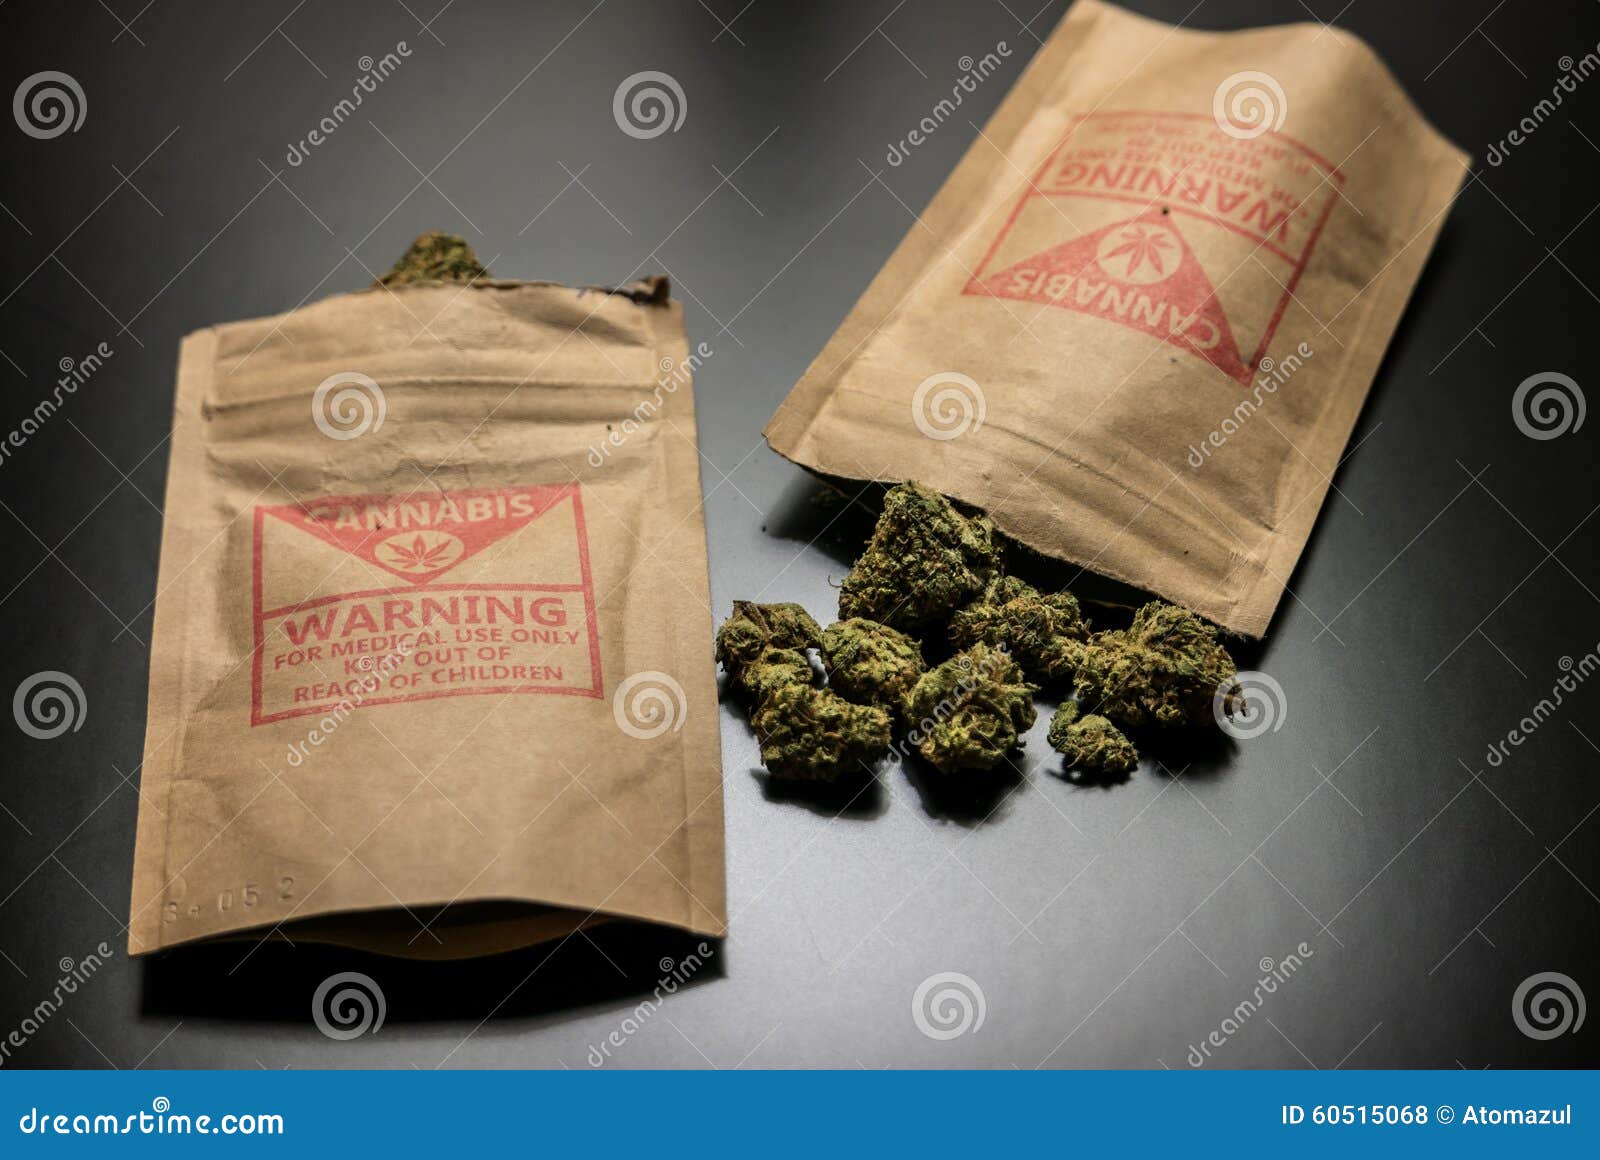 Пакетики для конопли марихуана купить в интернет